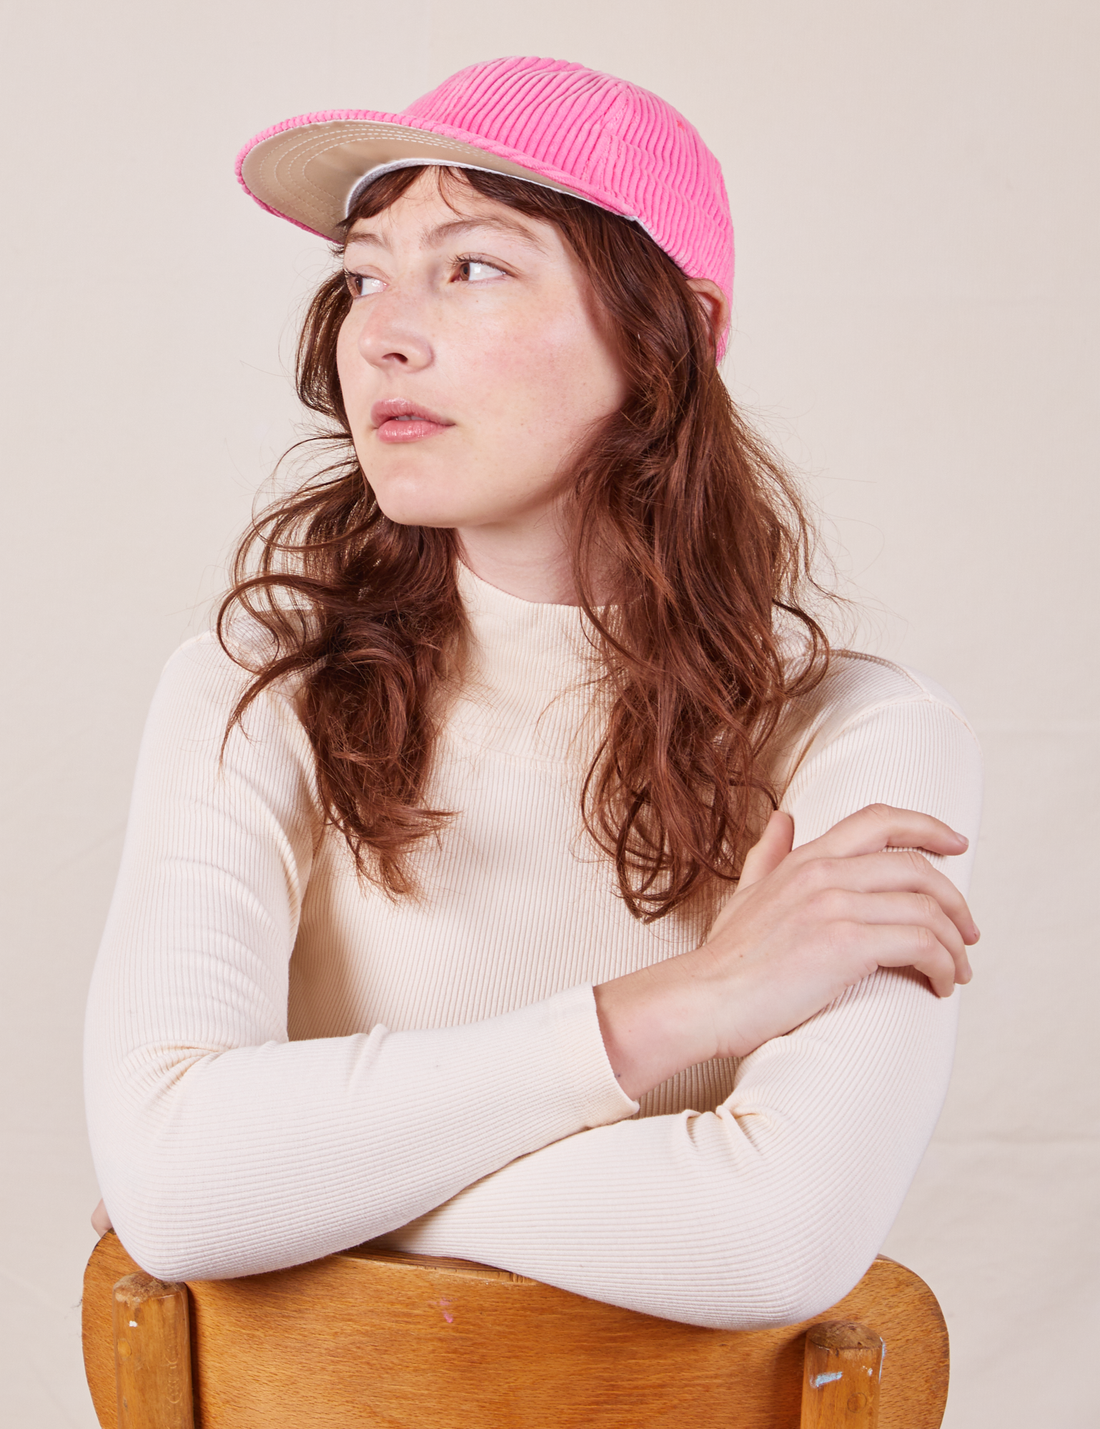 Dugout Corduroy Hat in Bubblegum Pink worn by Alex